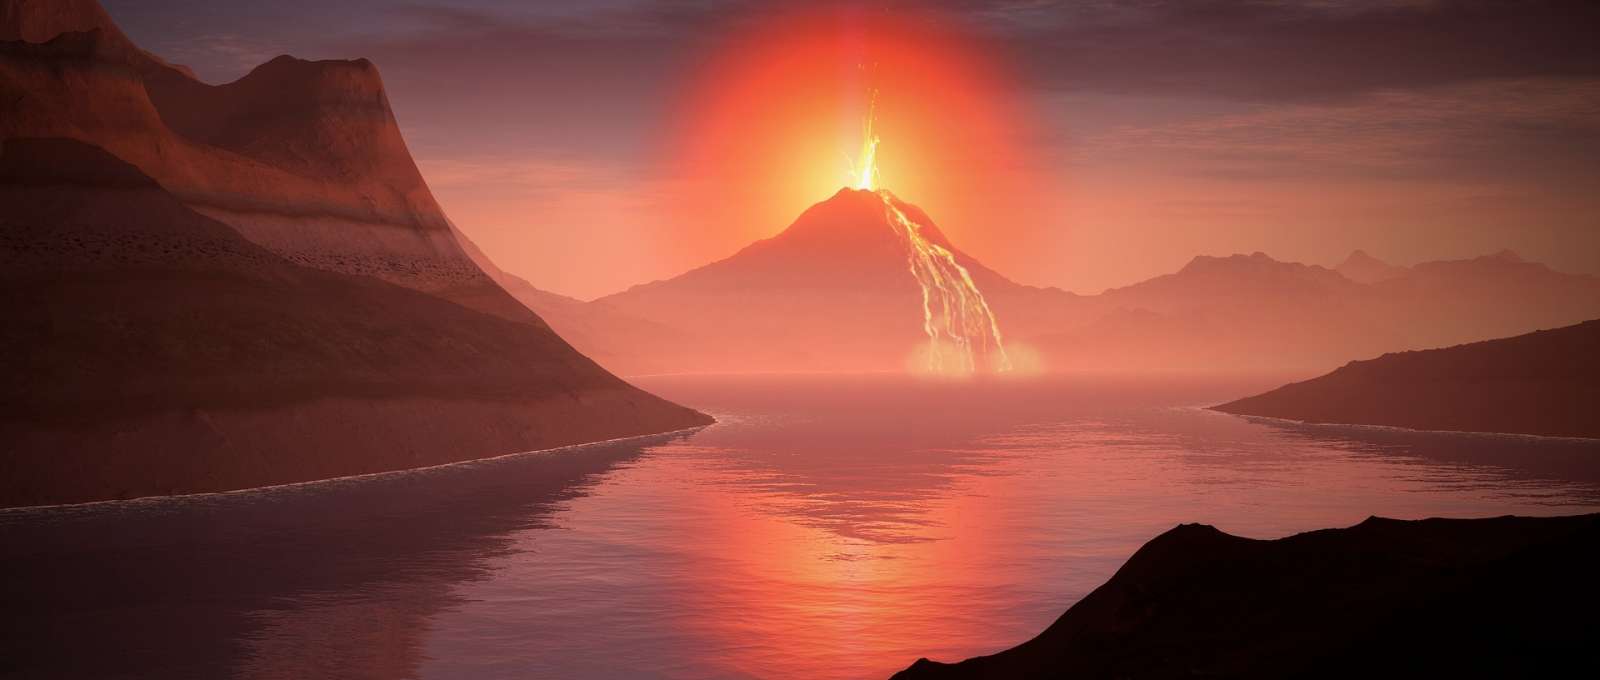 comment se forme volcan